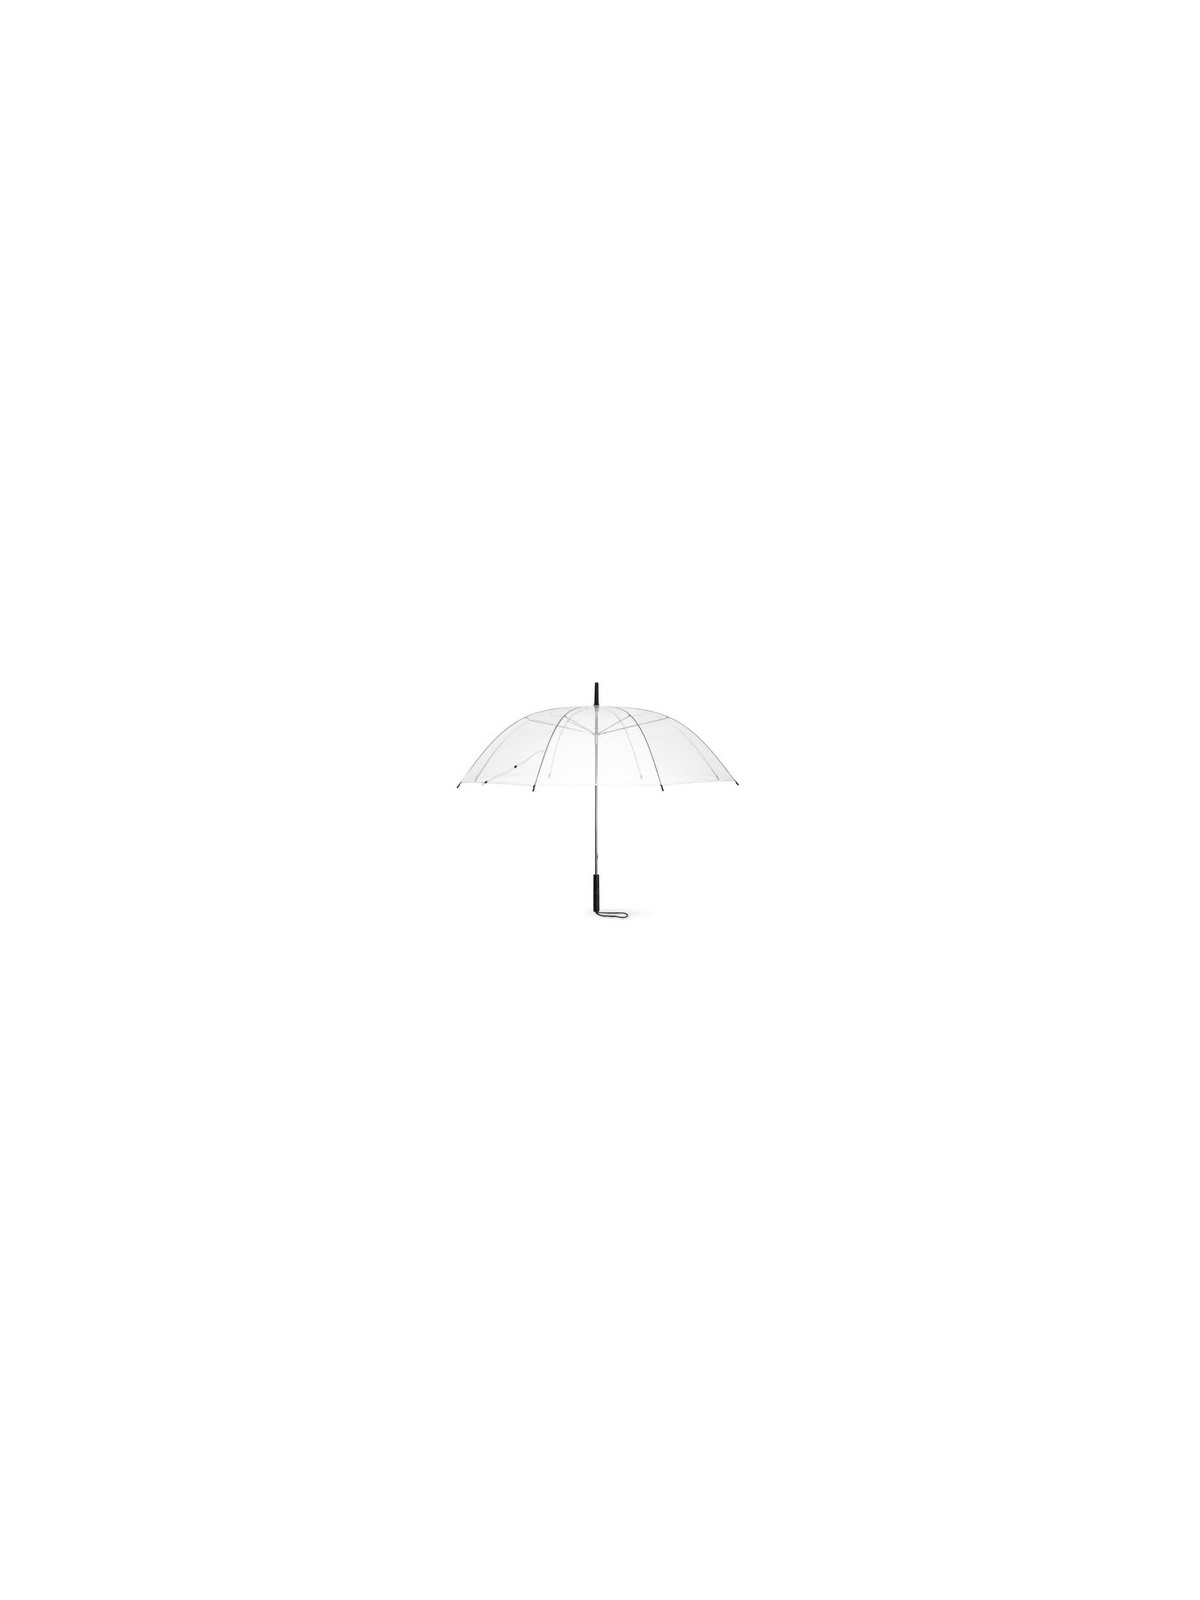 34-510 Parapluie publicitaire manuel transparent personnalisé